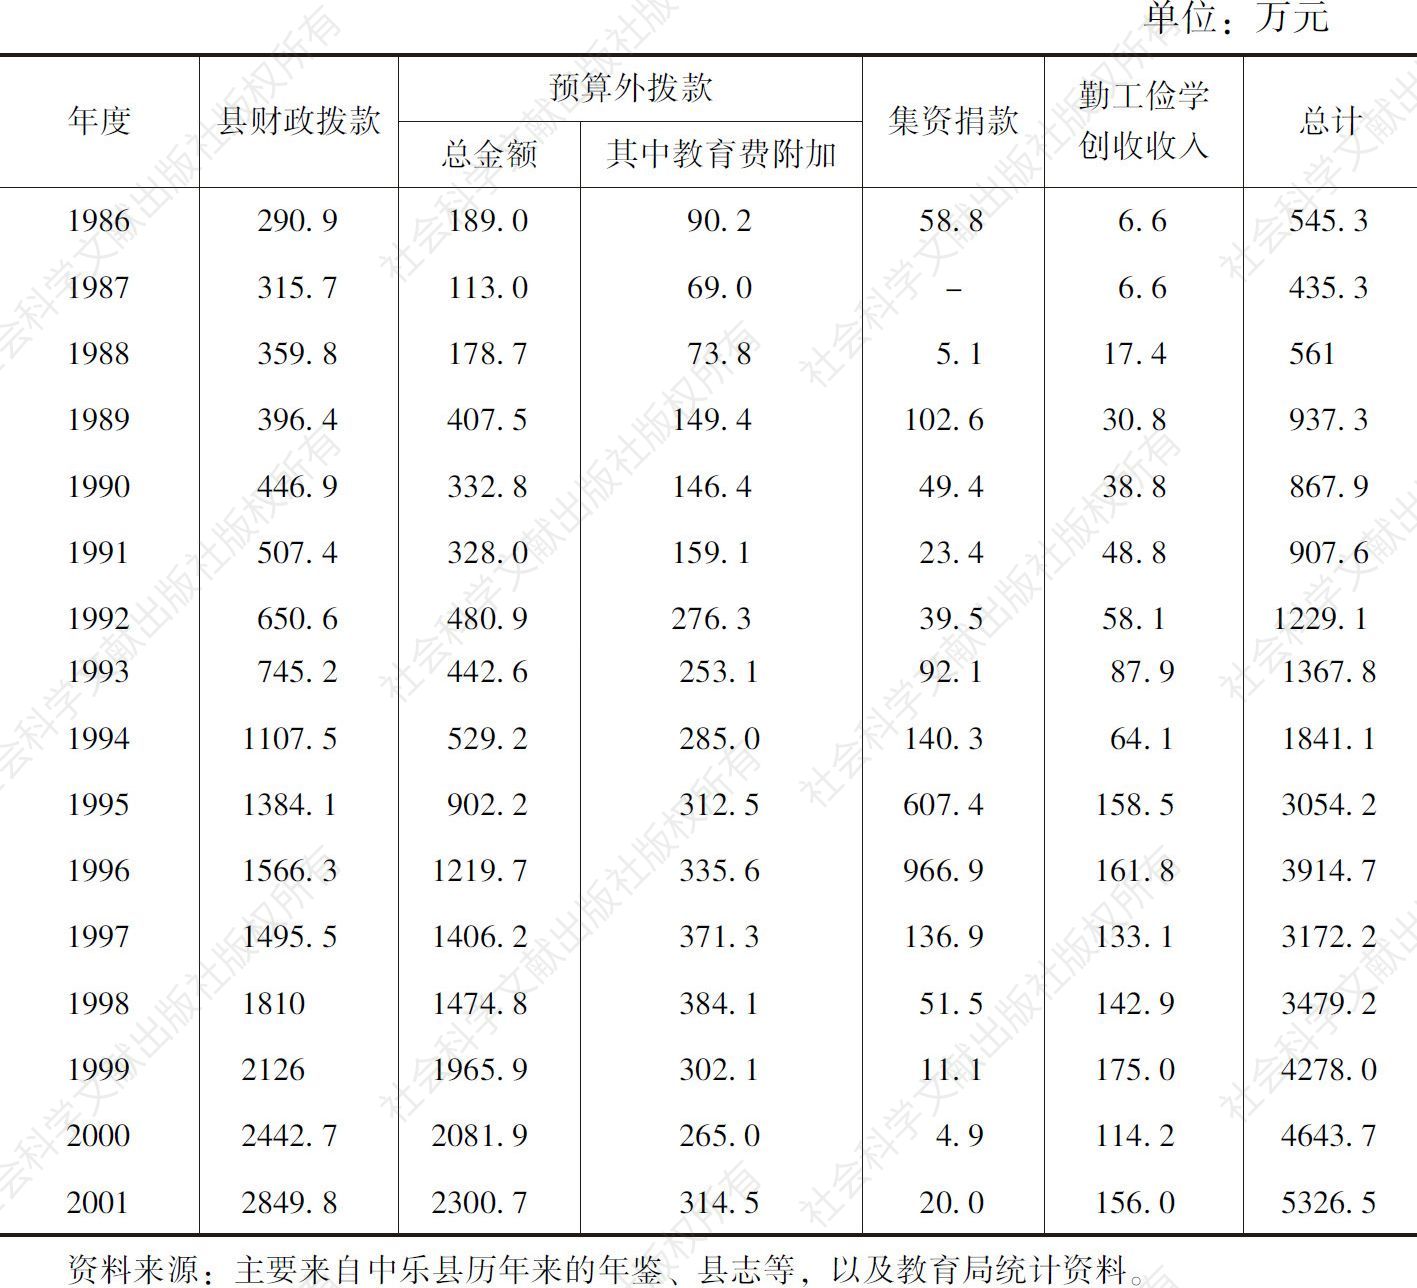 表2-1 历年来中乐县教育经费投入基本情况统计